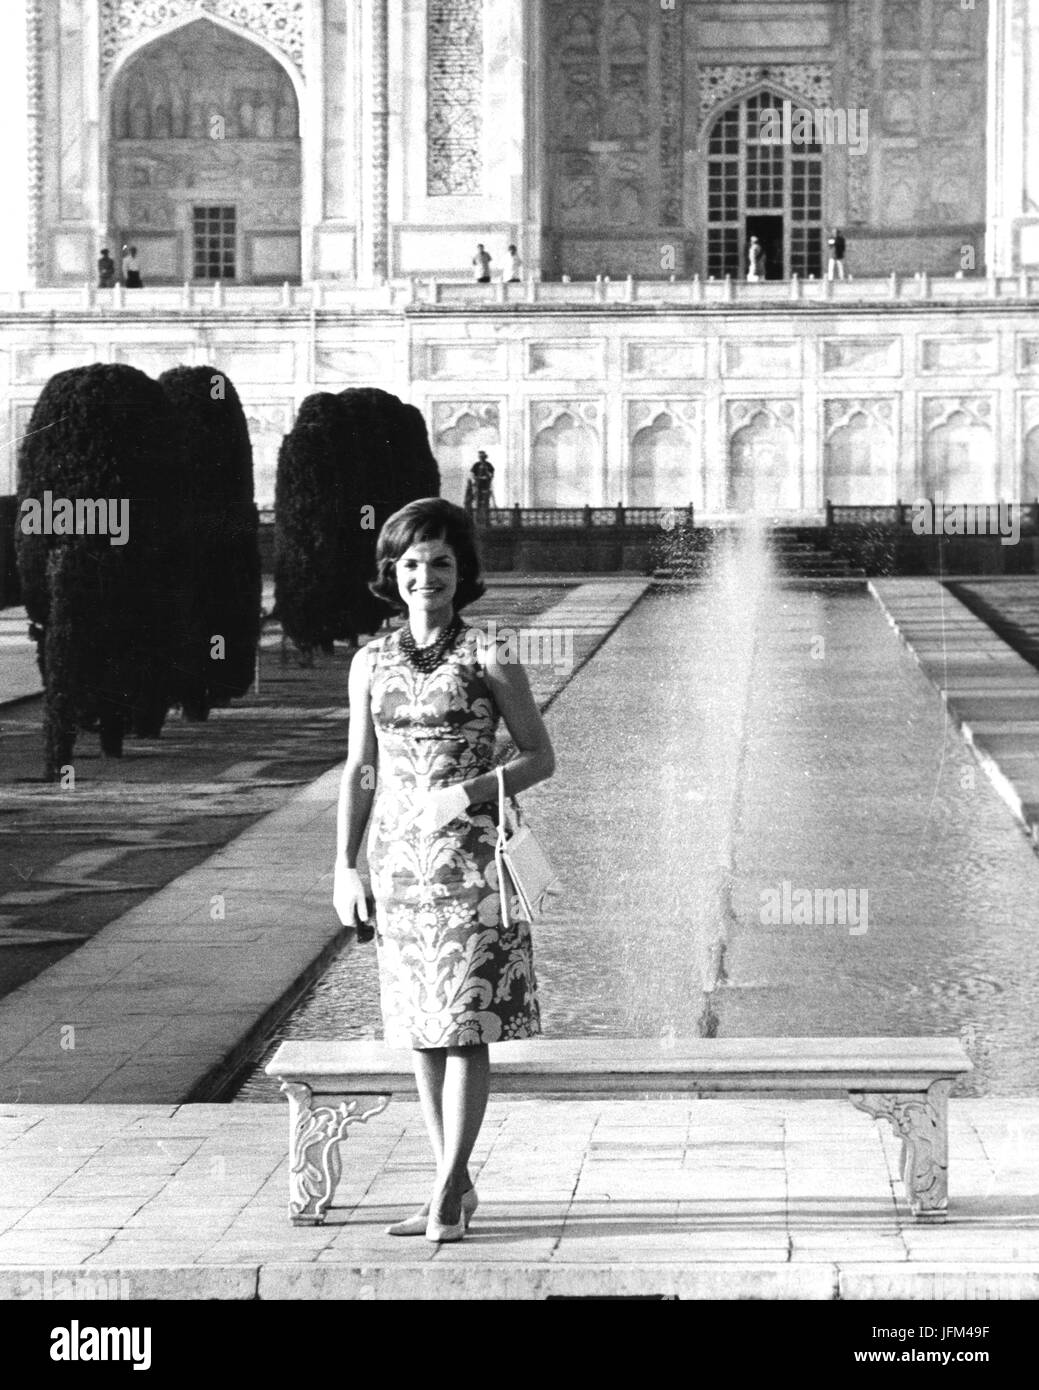 La Sra. Jacqueline Kennedy, Primera Dama de los Estados Unidos, plantea en el famoso monumento indio, el Taj Mahal, durante su visita a la India.3/1962 Foto de stock